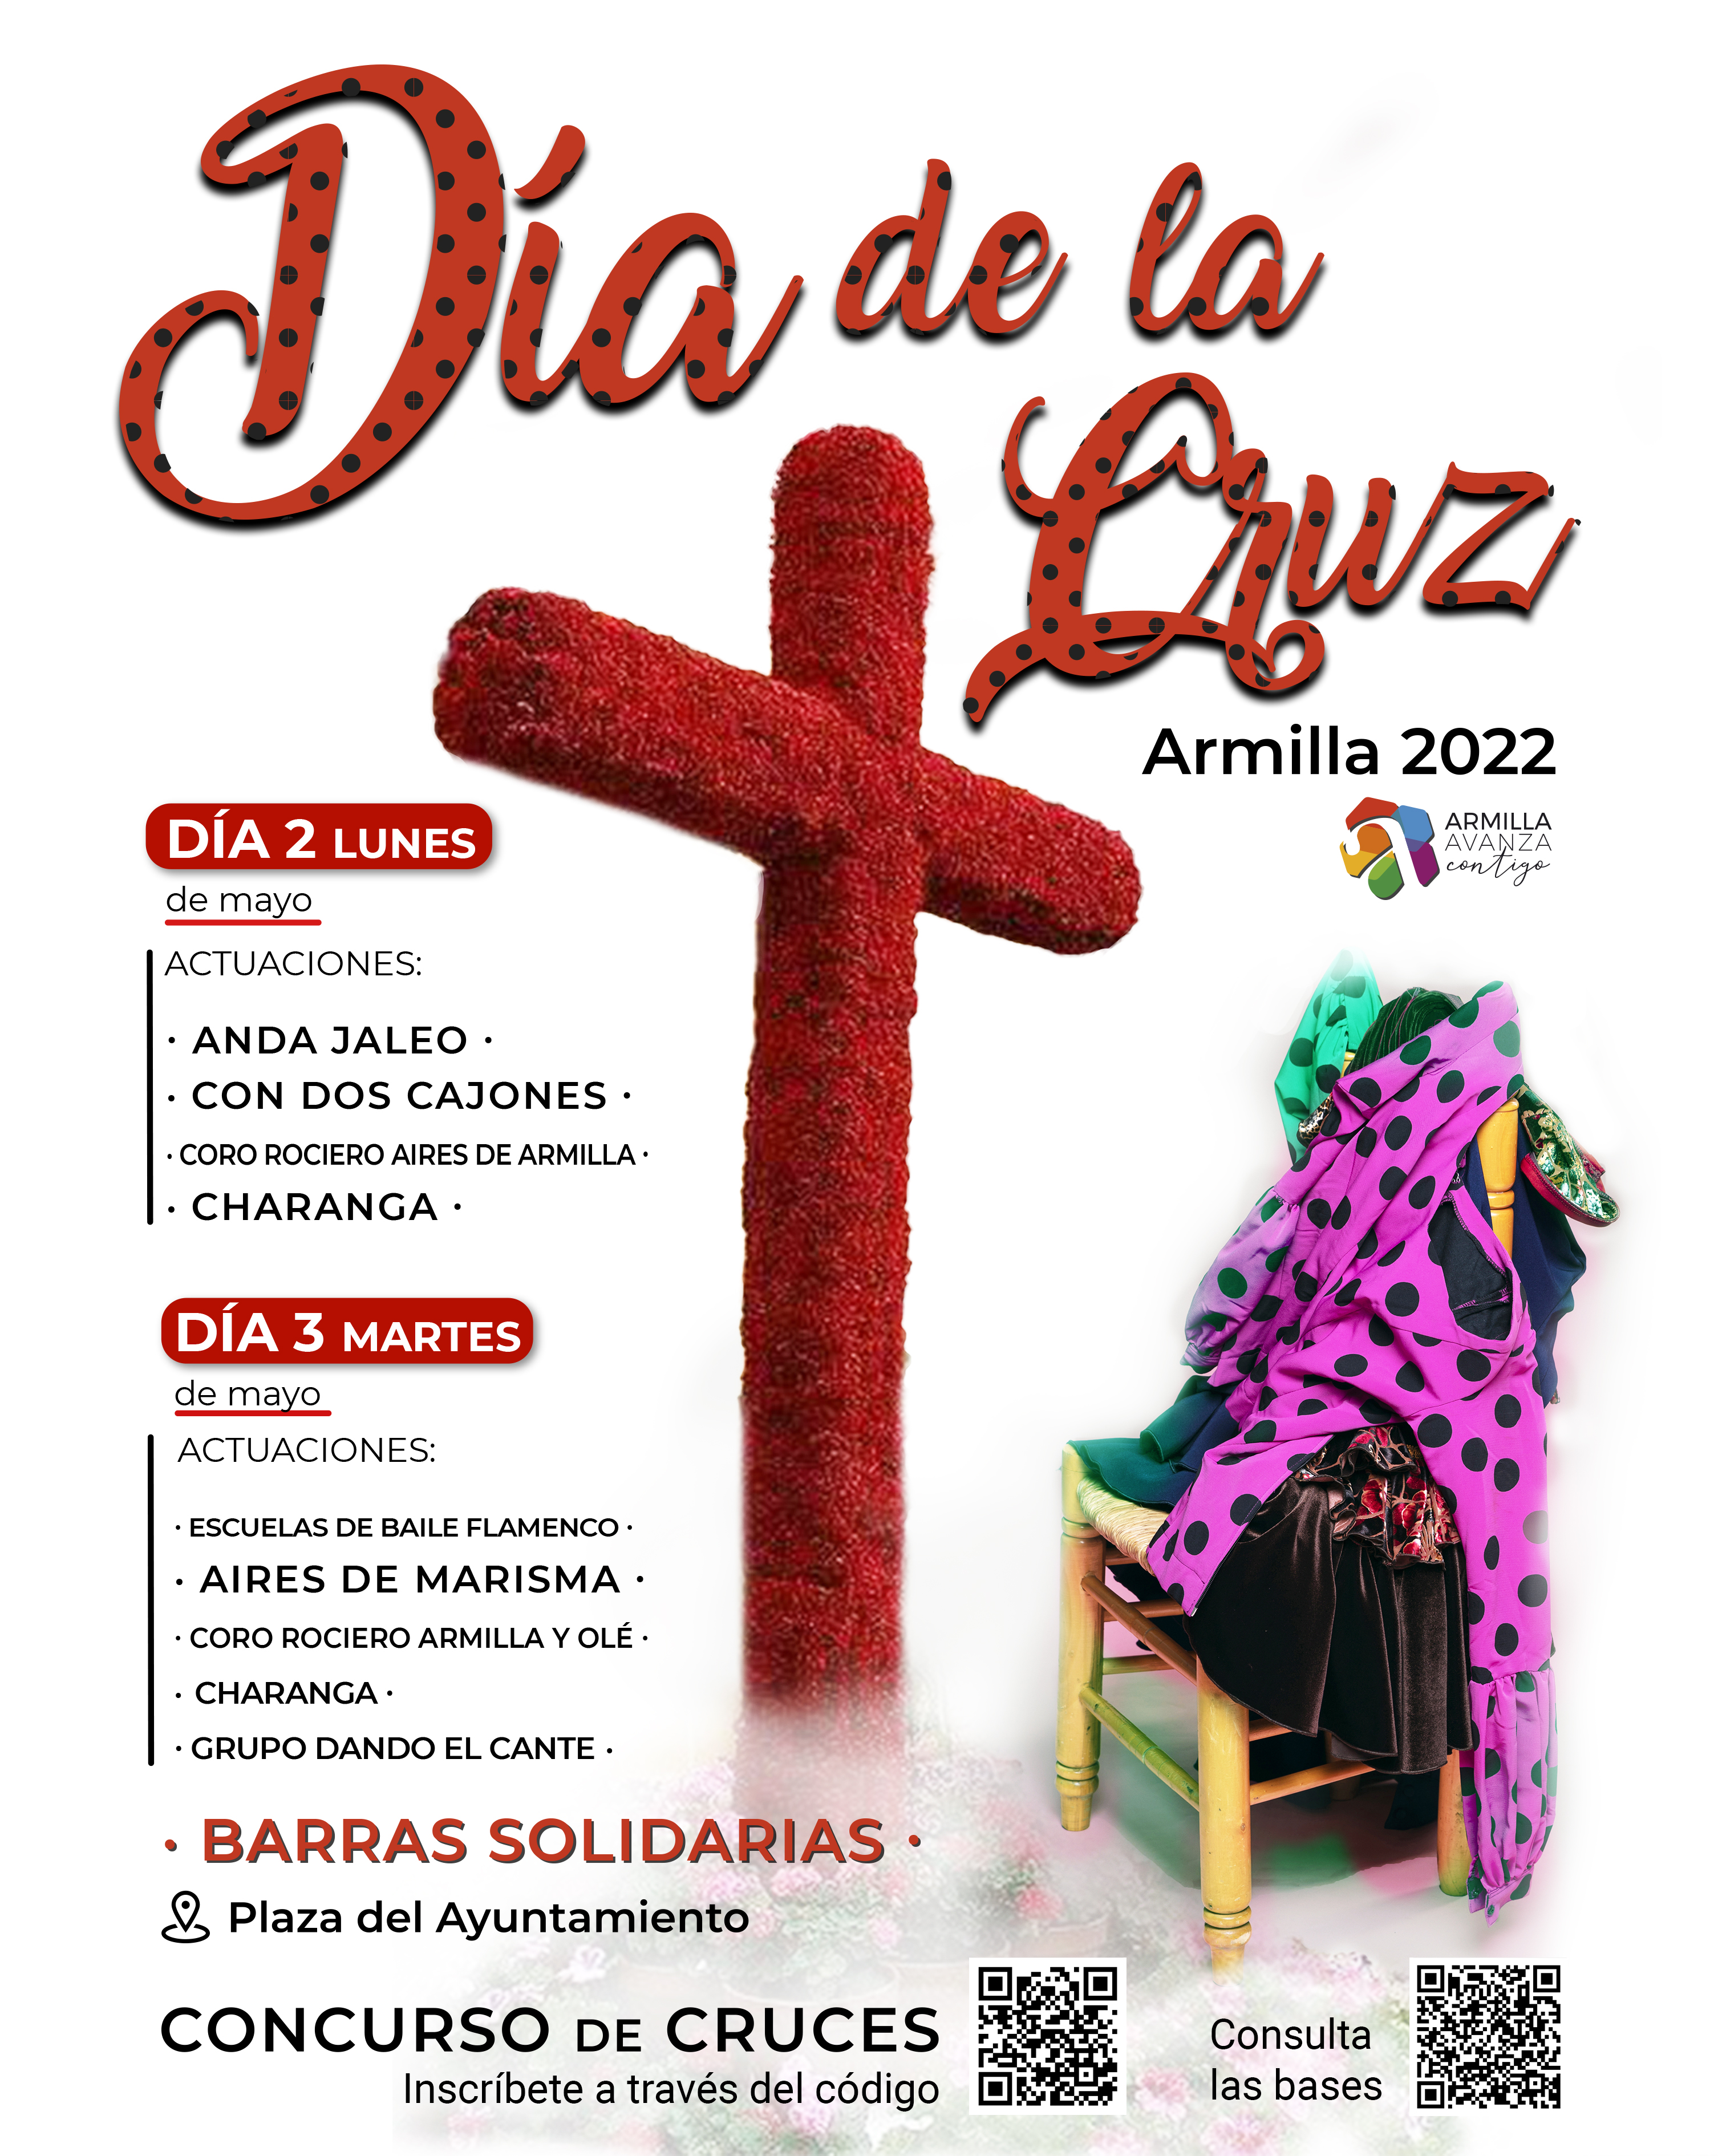 Música, ocio y tradiciones para animar las Cruces de Mayo en Armilla